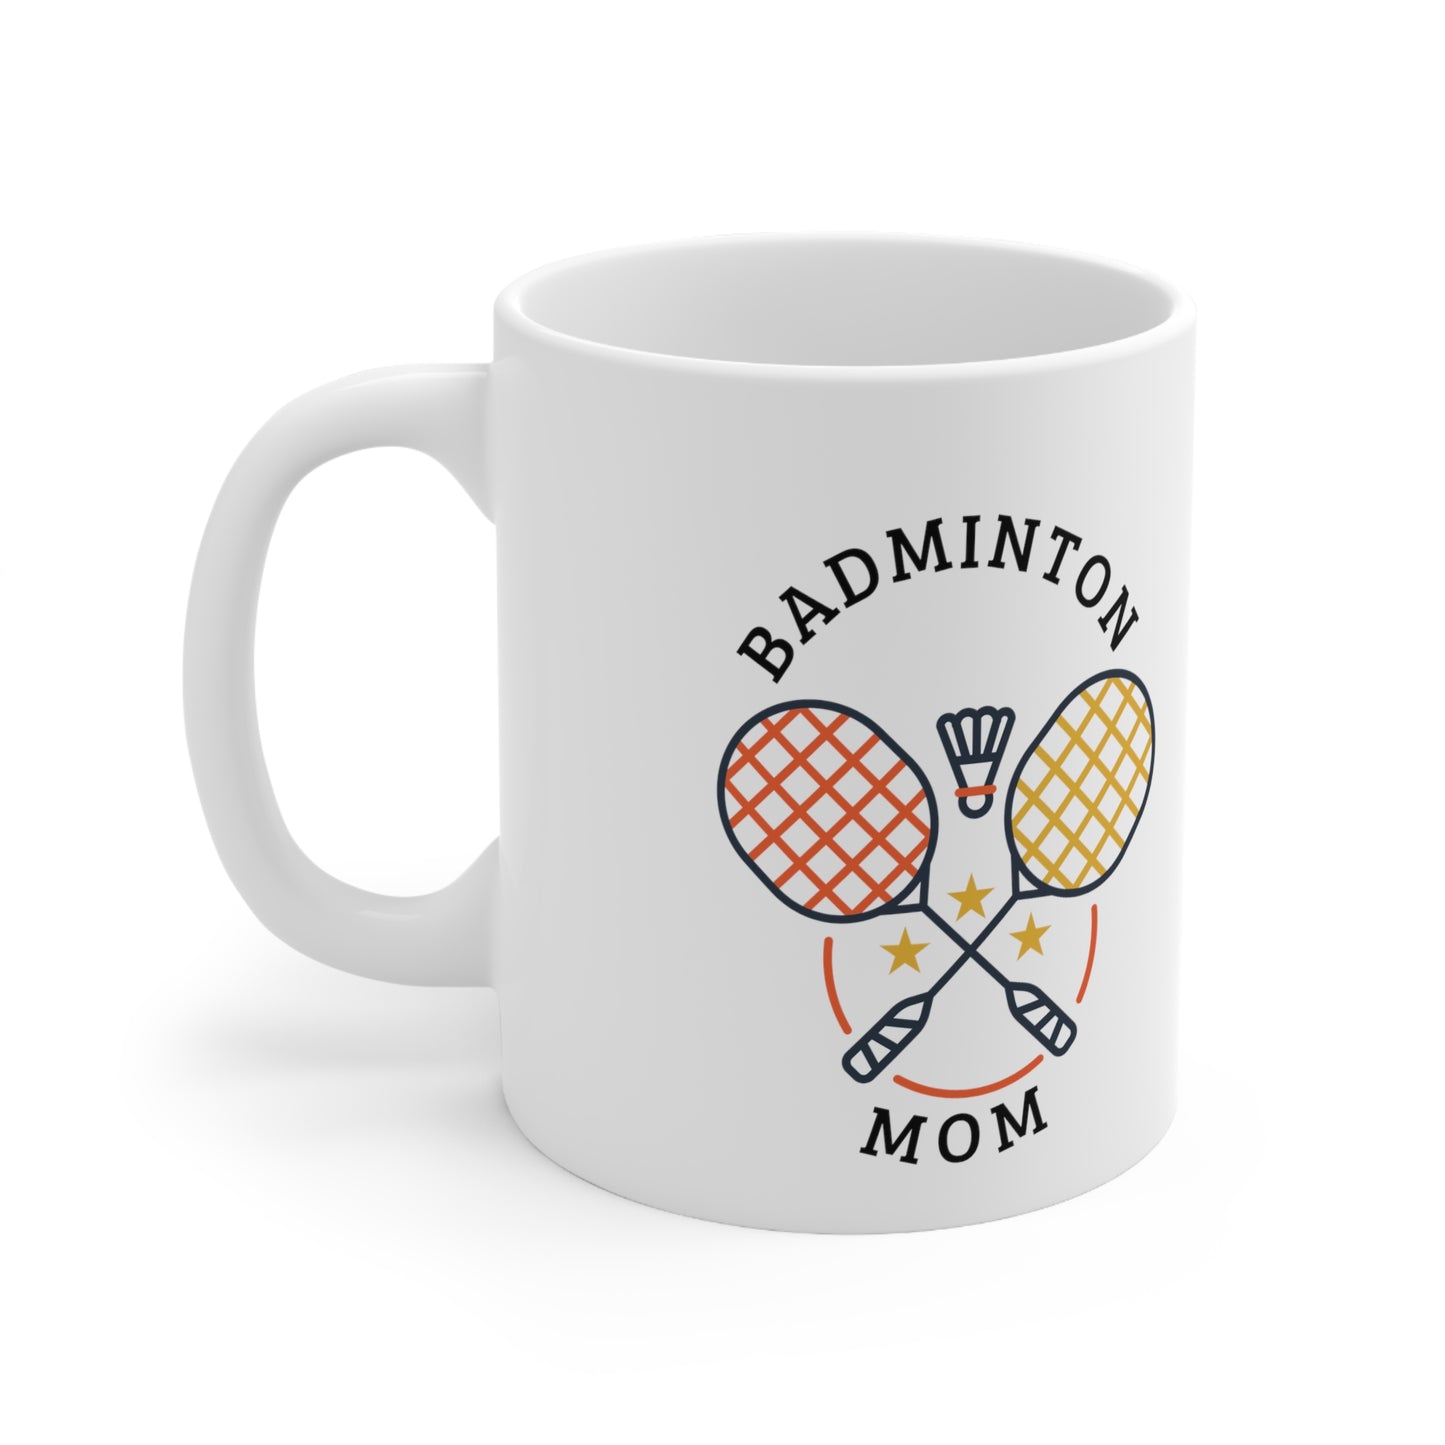 Badminton Mom Mug